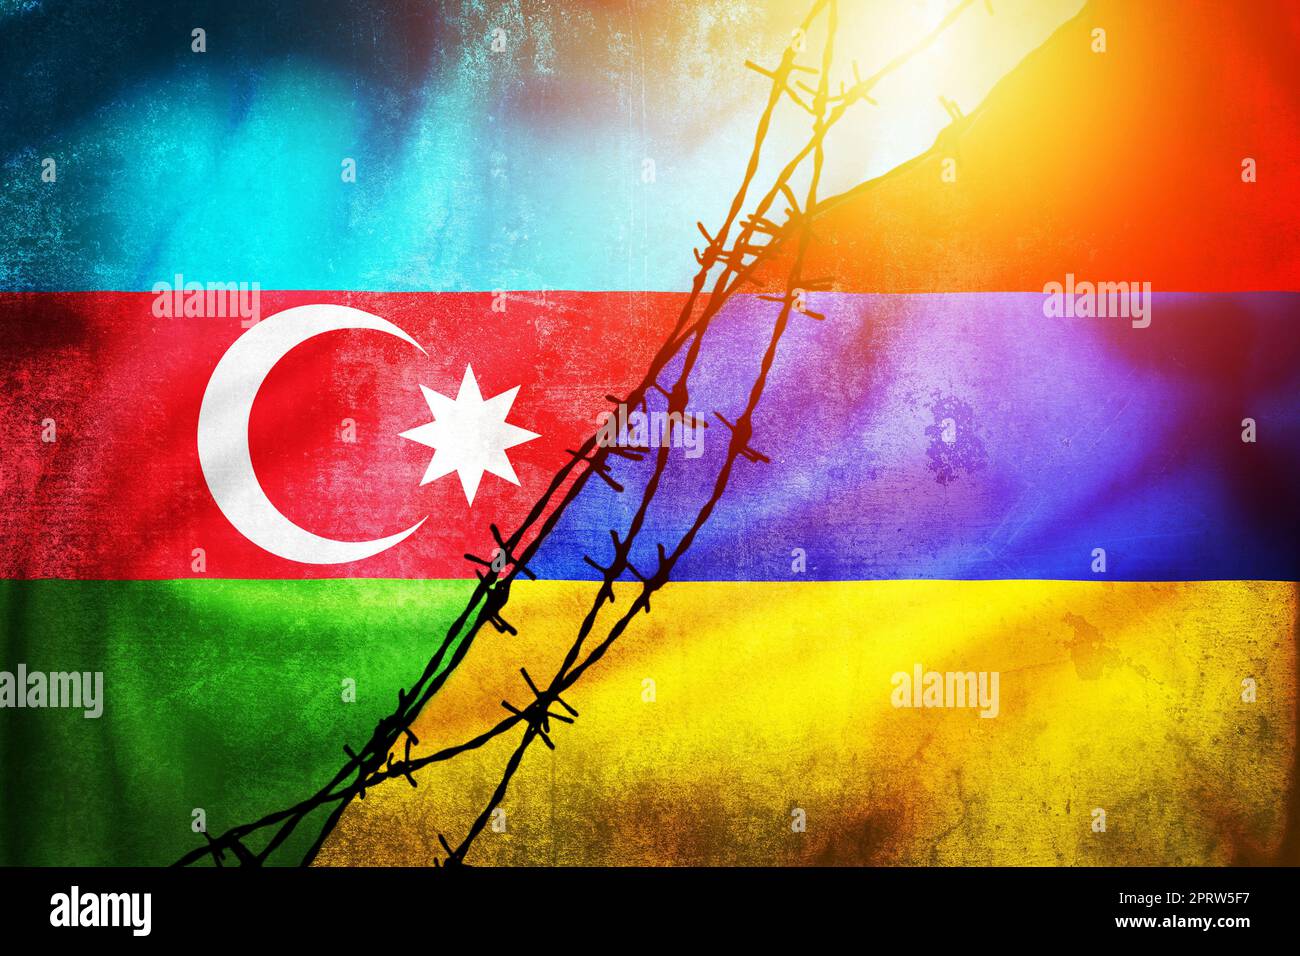 Grunge drapeaux de l'Azerbaïdjan et de l'Arménie divisé par barbelés illustration soleil brume vue Banque D'Images